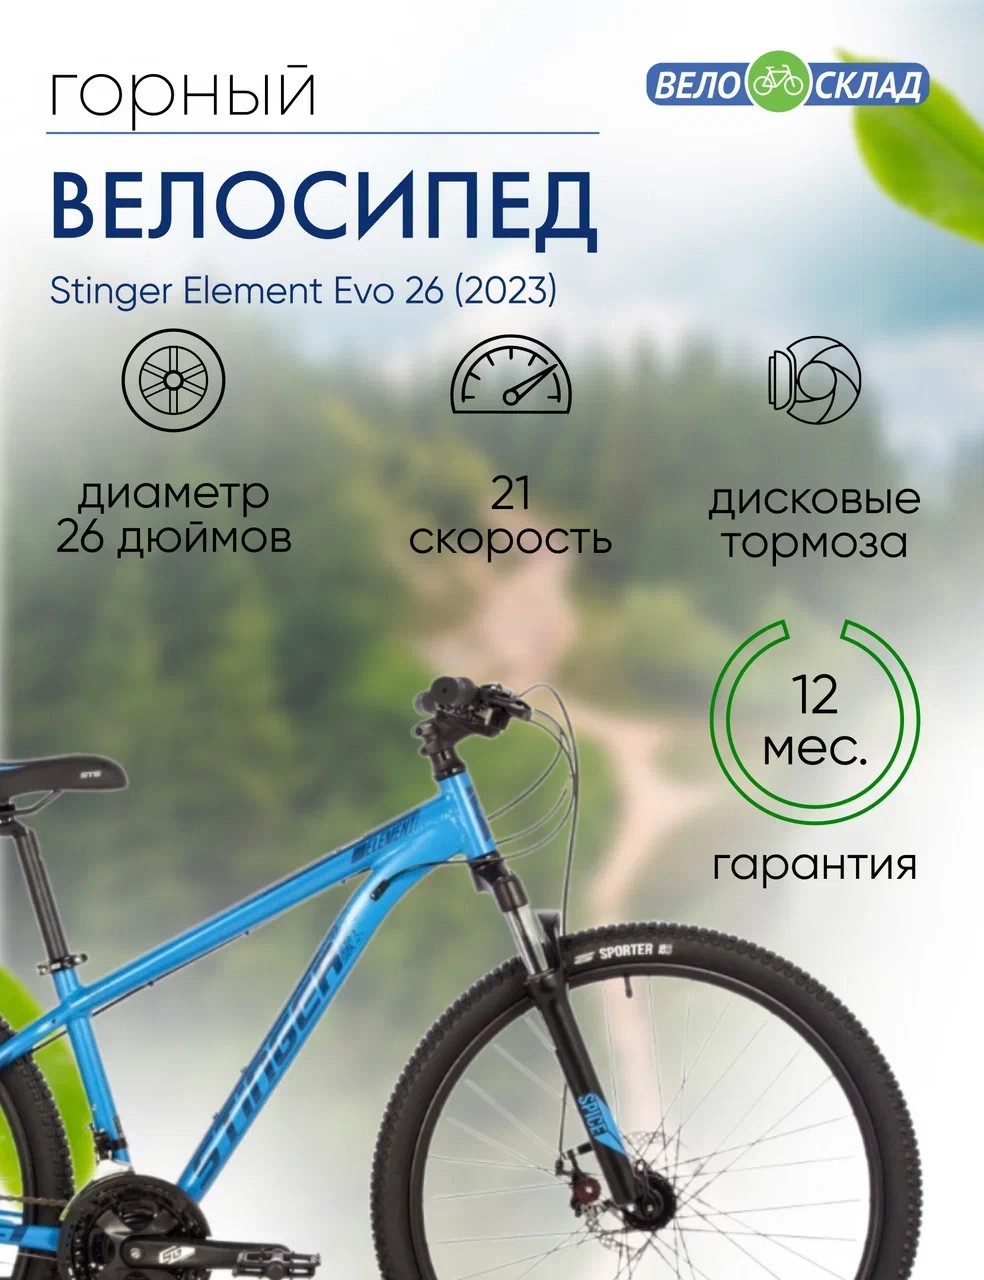 Горный велосипед Stinger Element Evo 26, год 2023, цвет Синий, ростовка 18